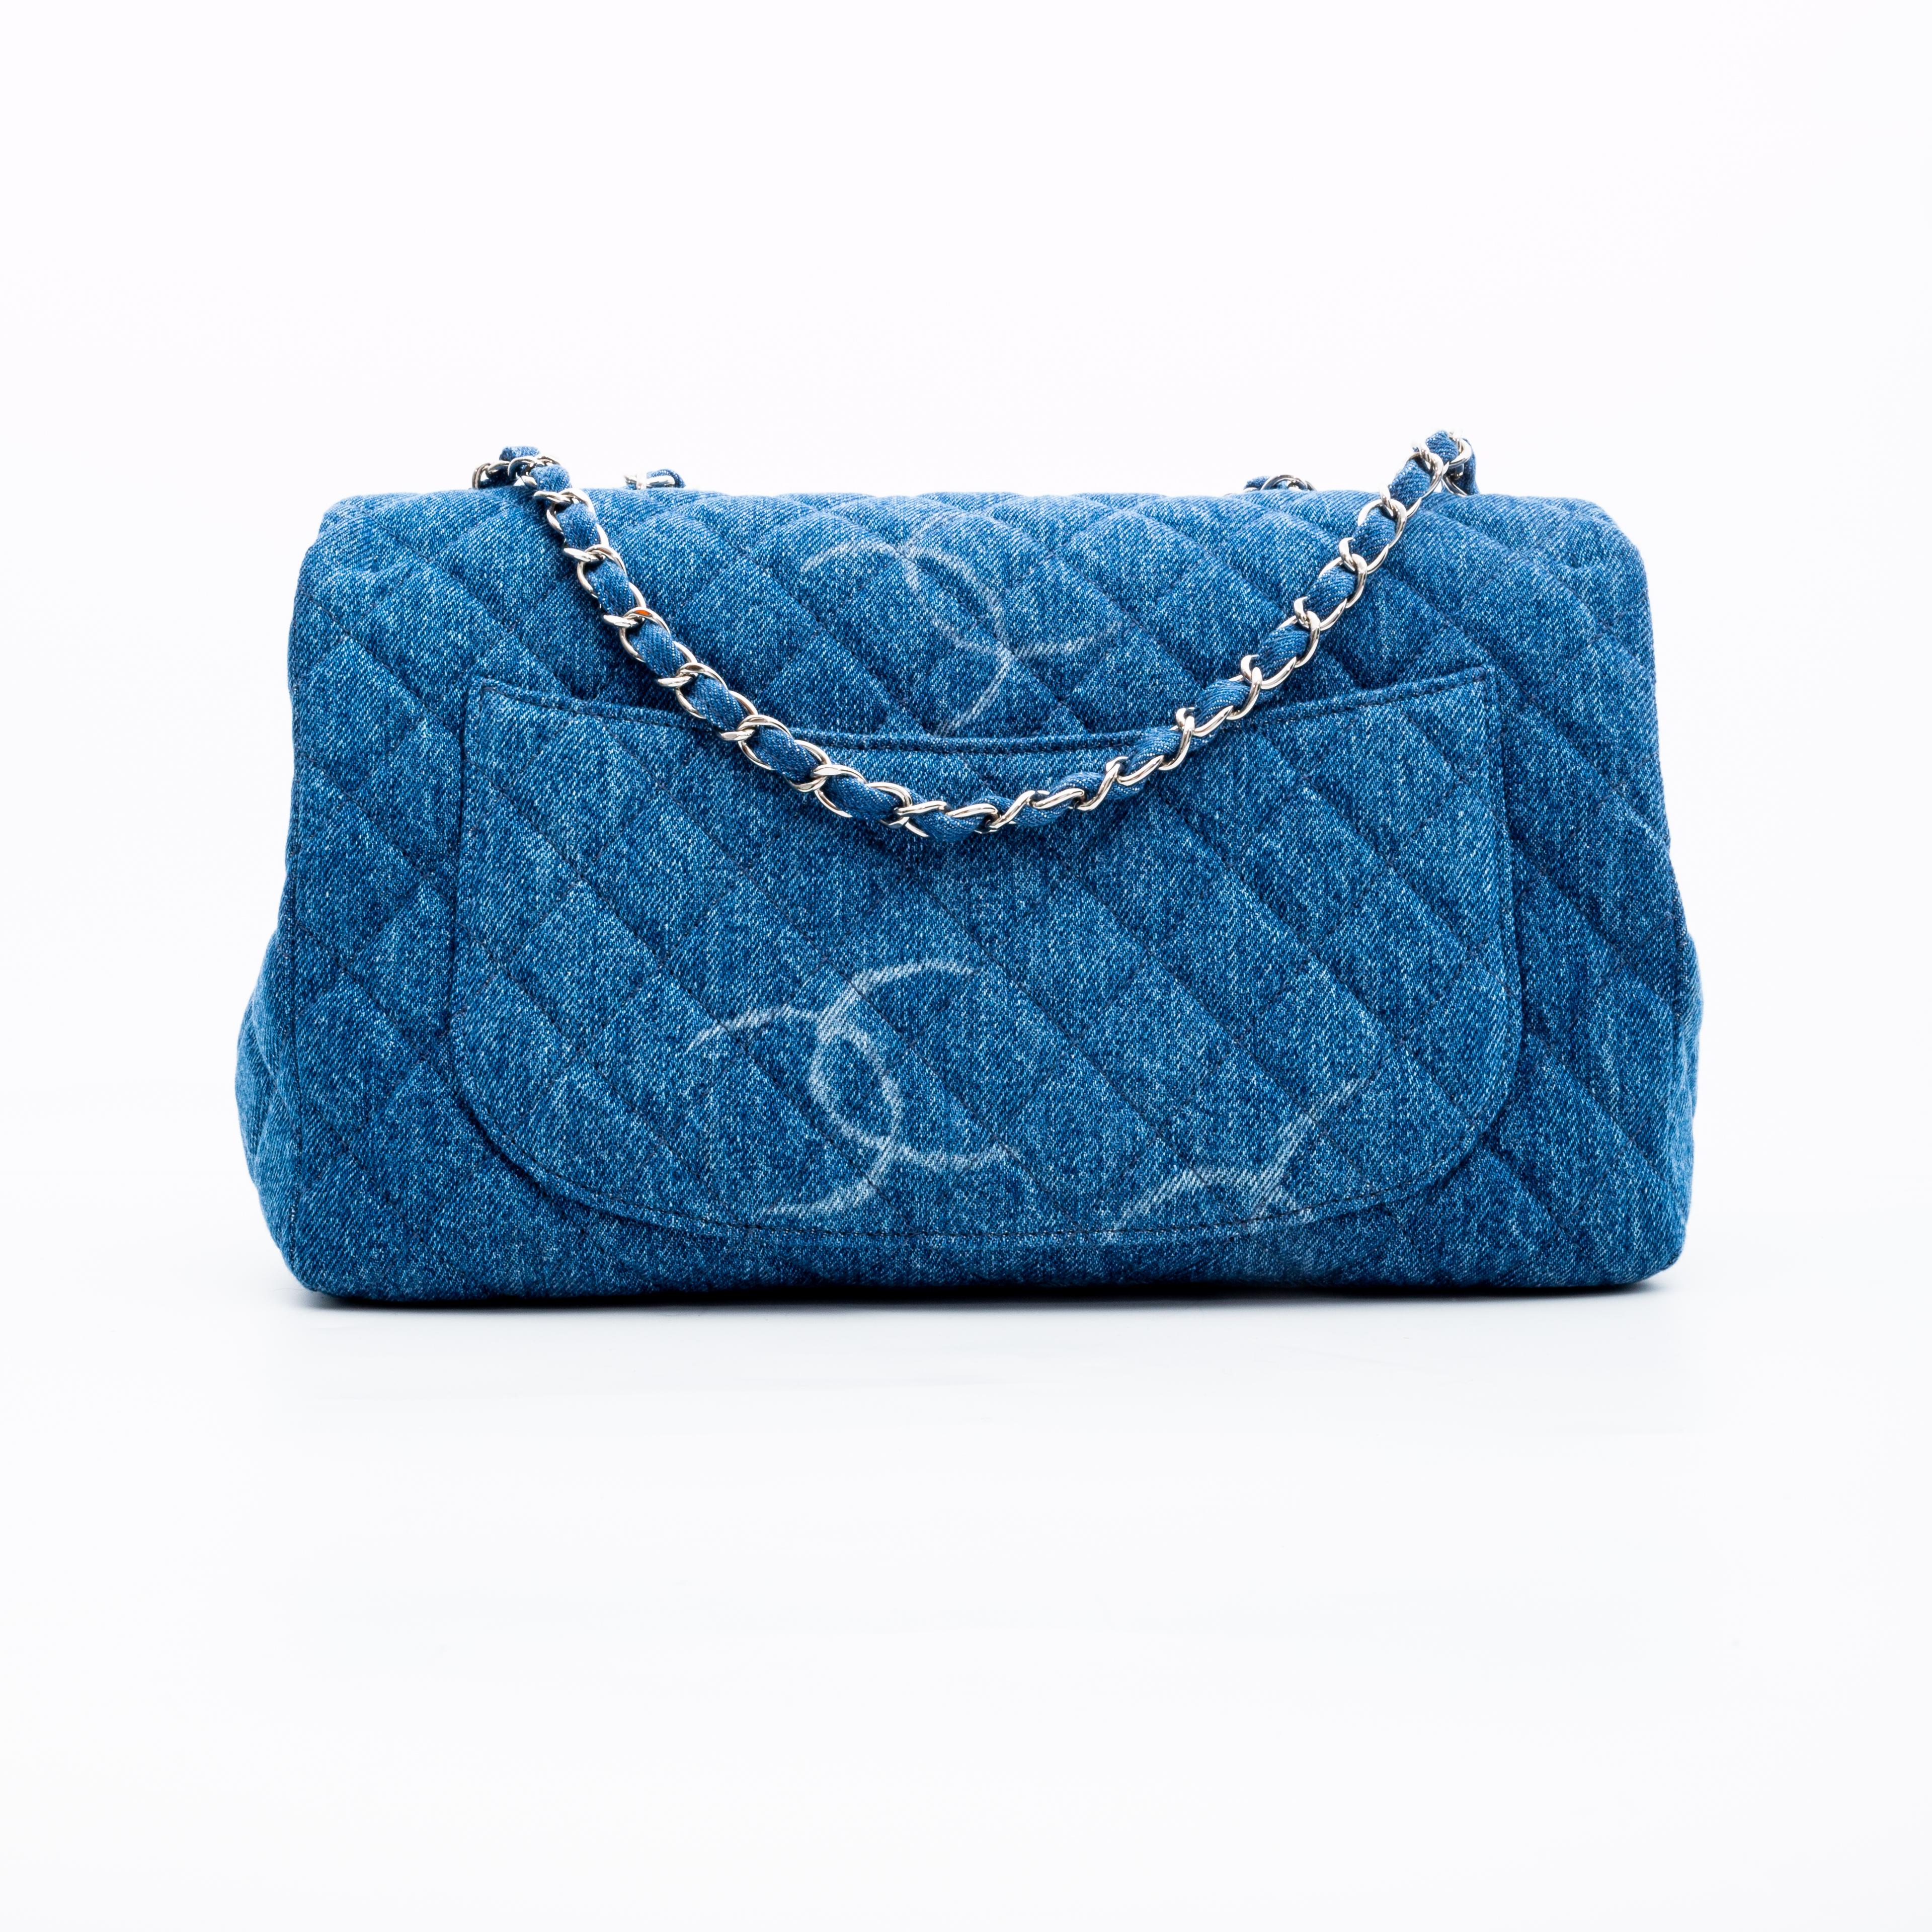 Chanel Denim gesteppt CC Druck Jumbo einzelne Klappe Tasche blau 2020 (Blau)